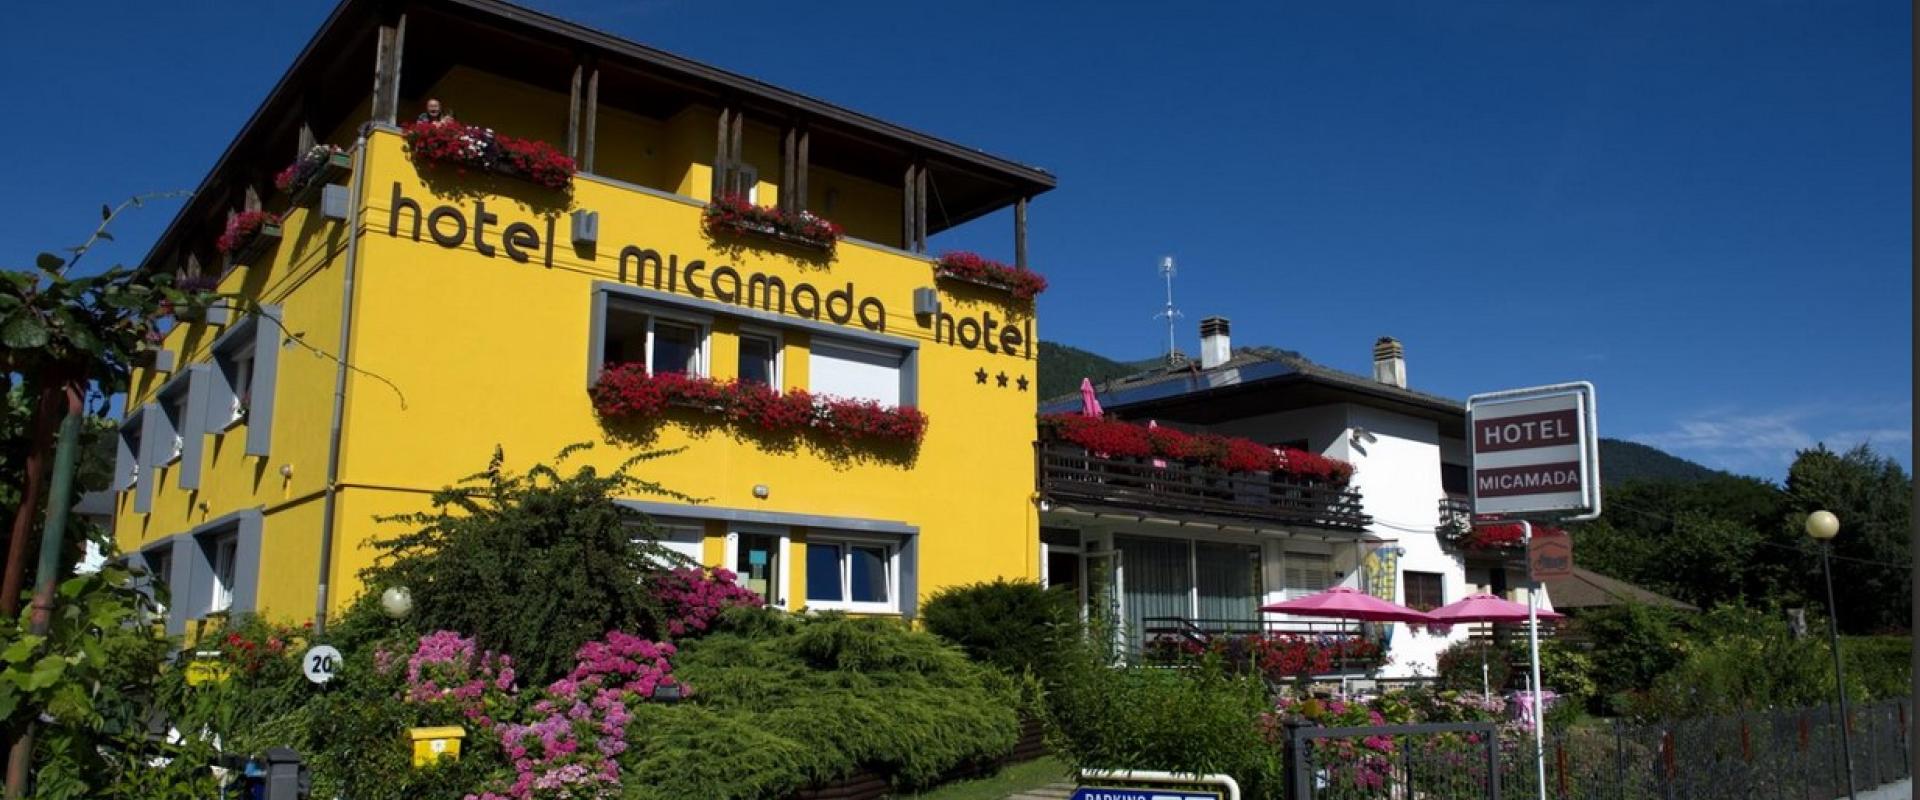 14542 Motorrad Hotel Micamada am Gardasee.jpg